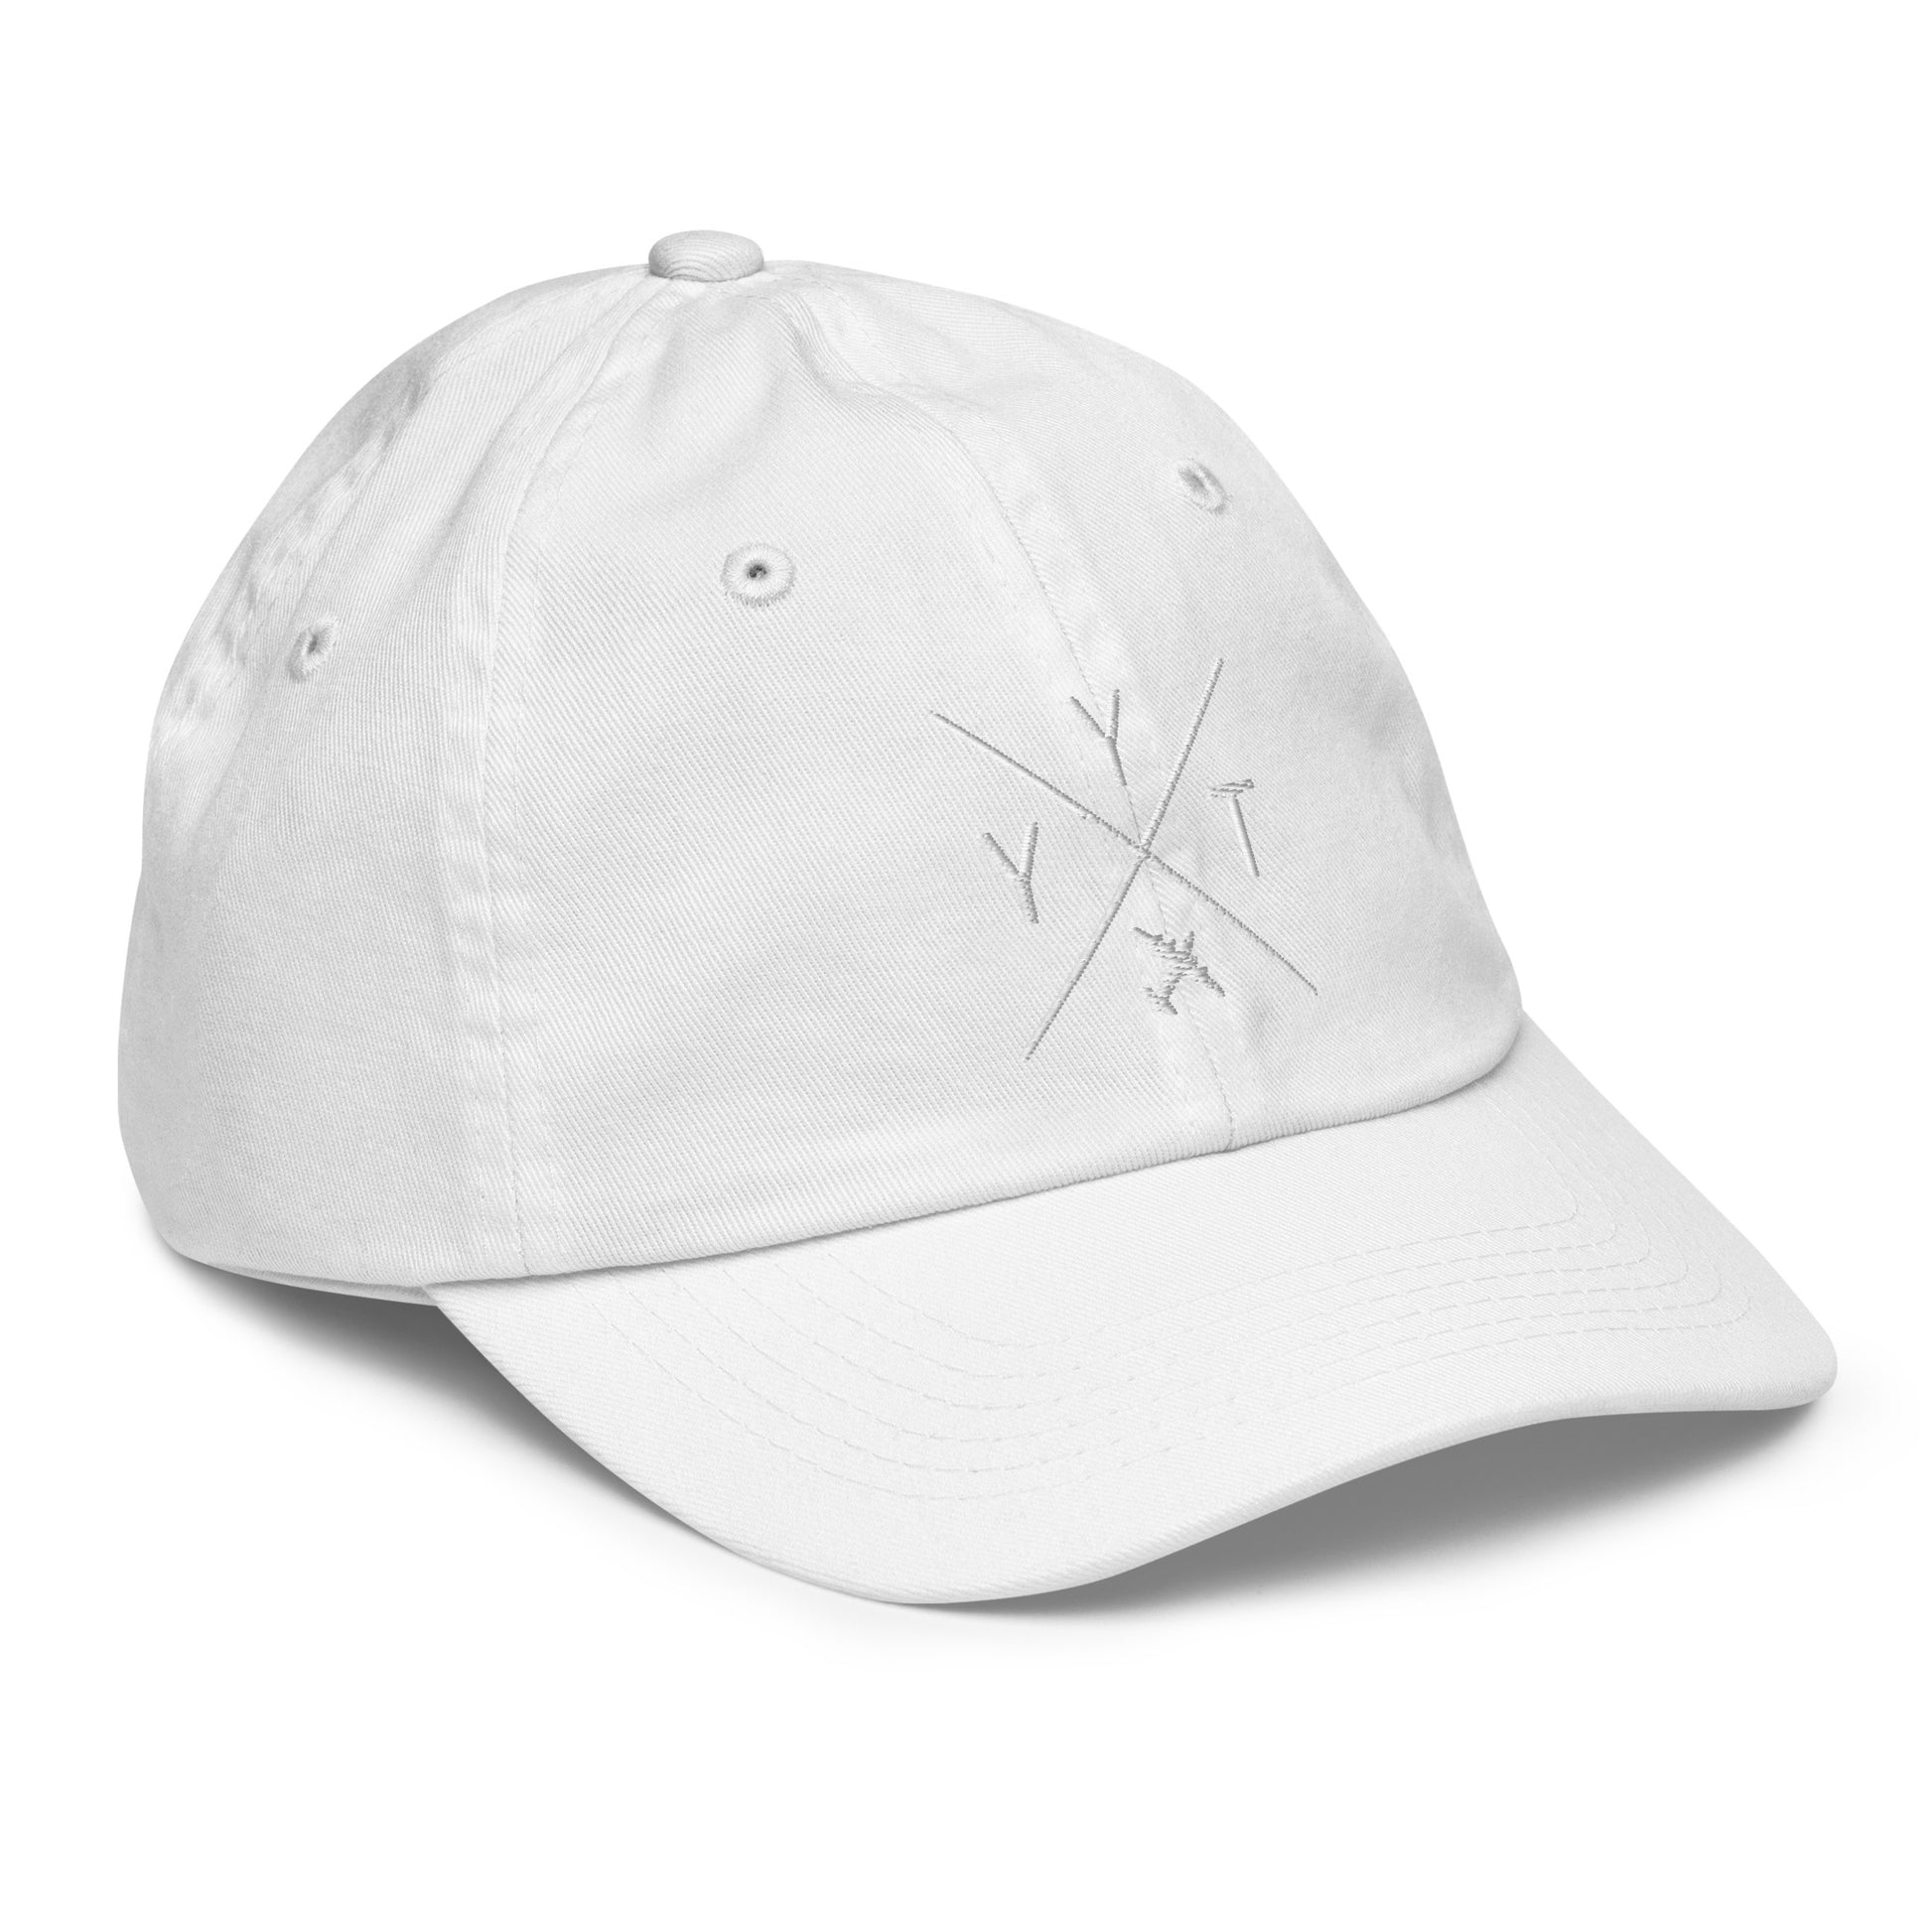 Crossed-X Kid's Baseball Cap - White • YYT St. John's • YHM Designs - Image 35